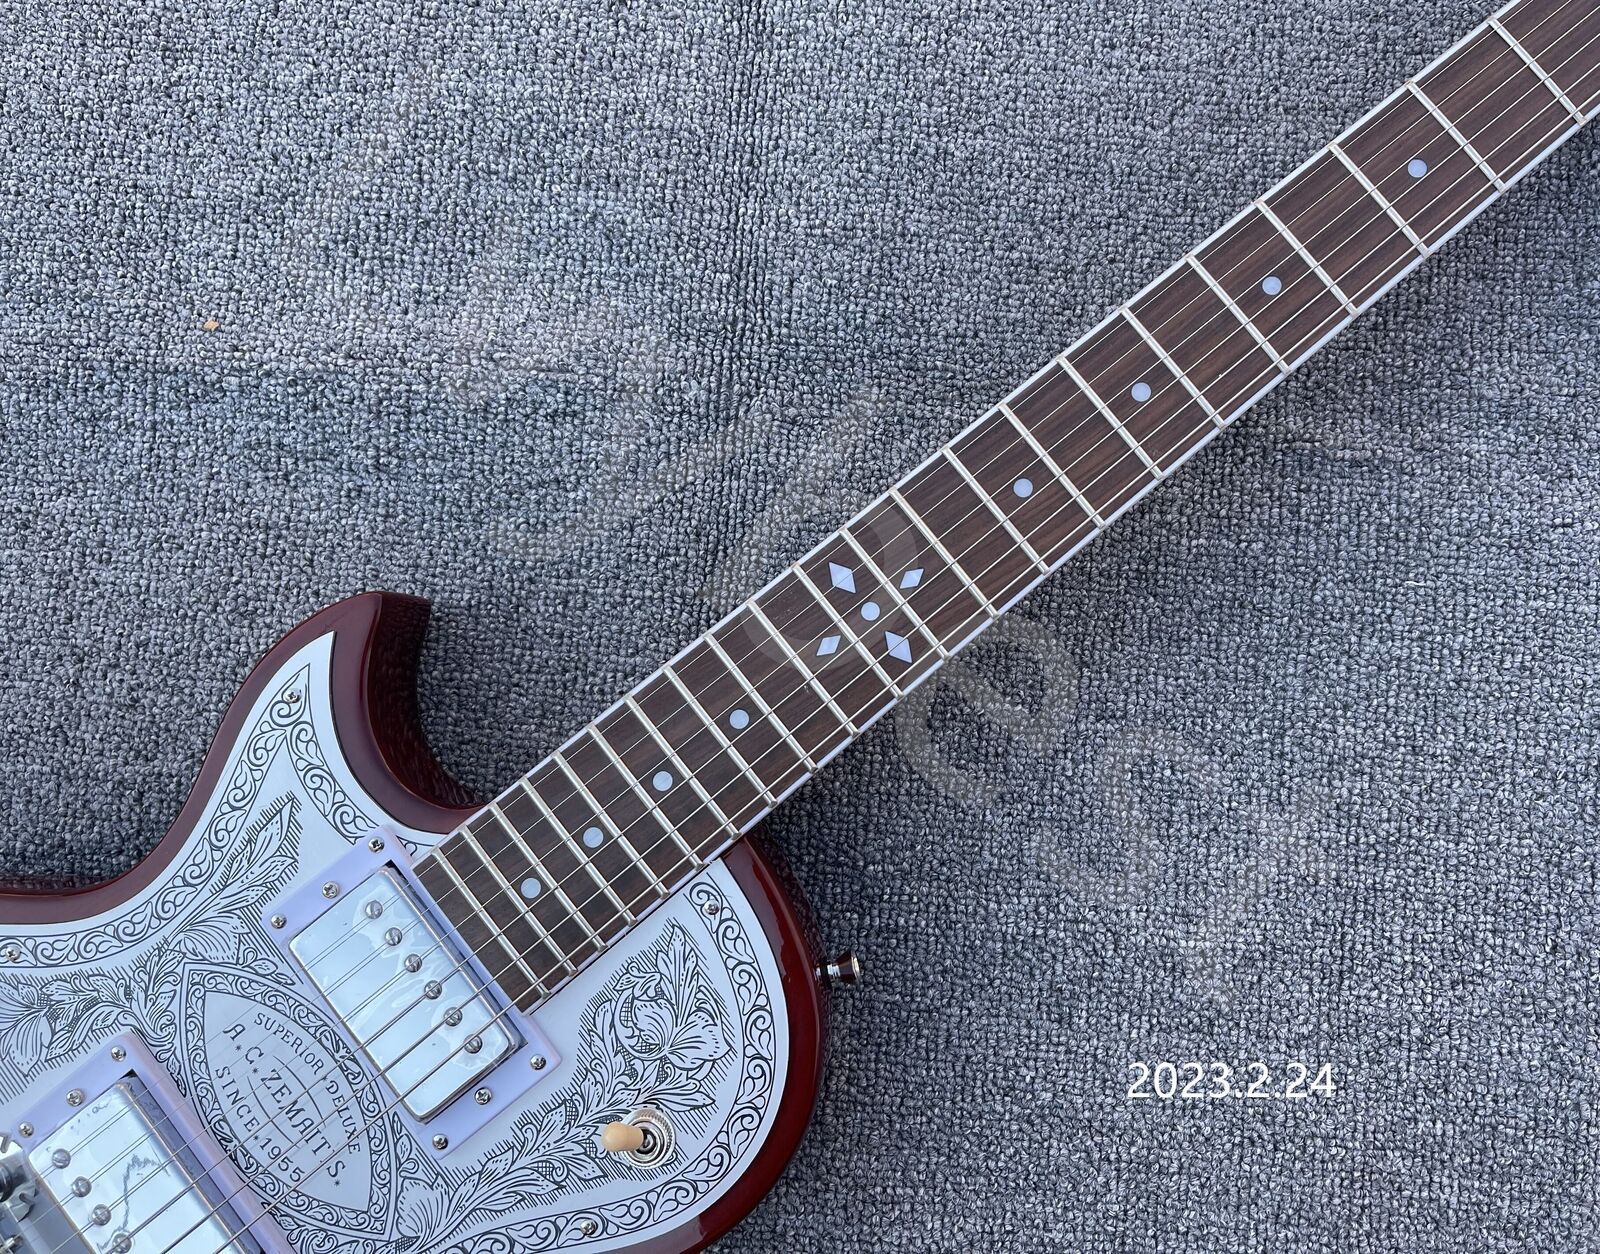 Linkshandige ZEMA ITIS Casimere elektrische gitaar met metalen voorkant, 22 frets aluminium plaat